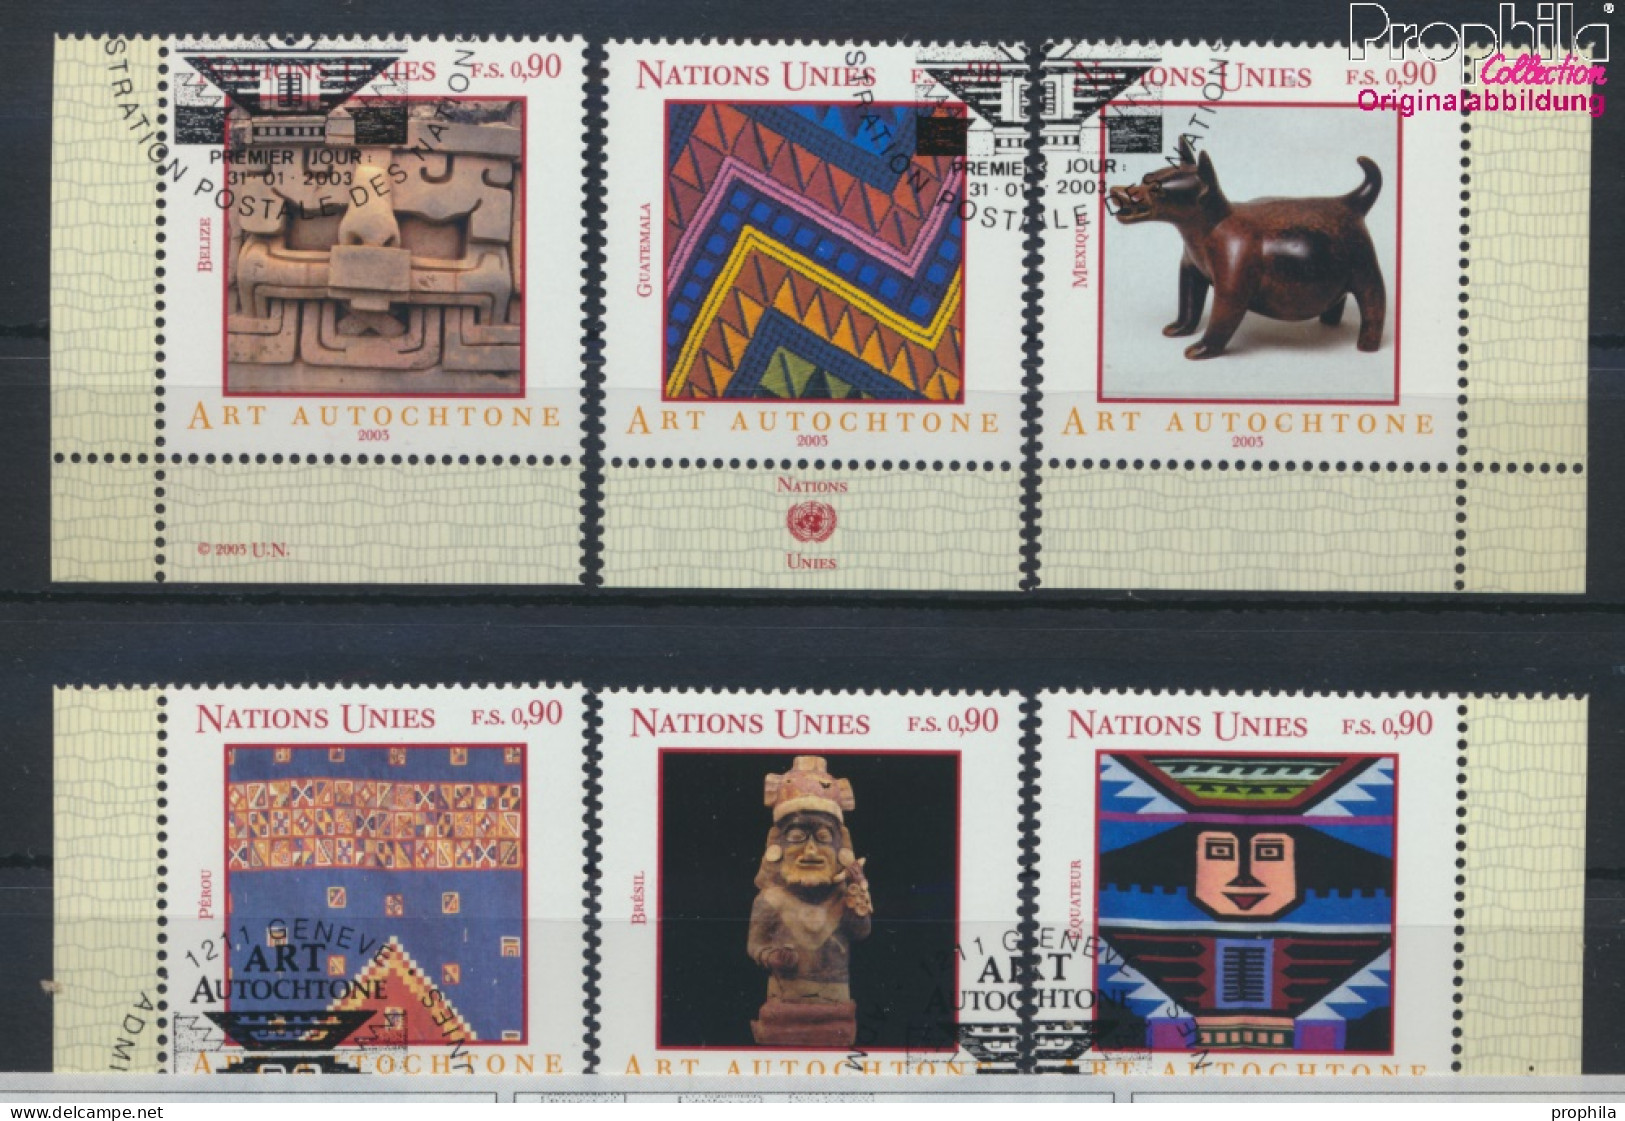 UNO - Genf 459-464 (kompl.Ausg.) Gestempelt 2003 Eingeborenenkunst (10067952 - Used Stamps